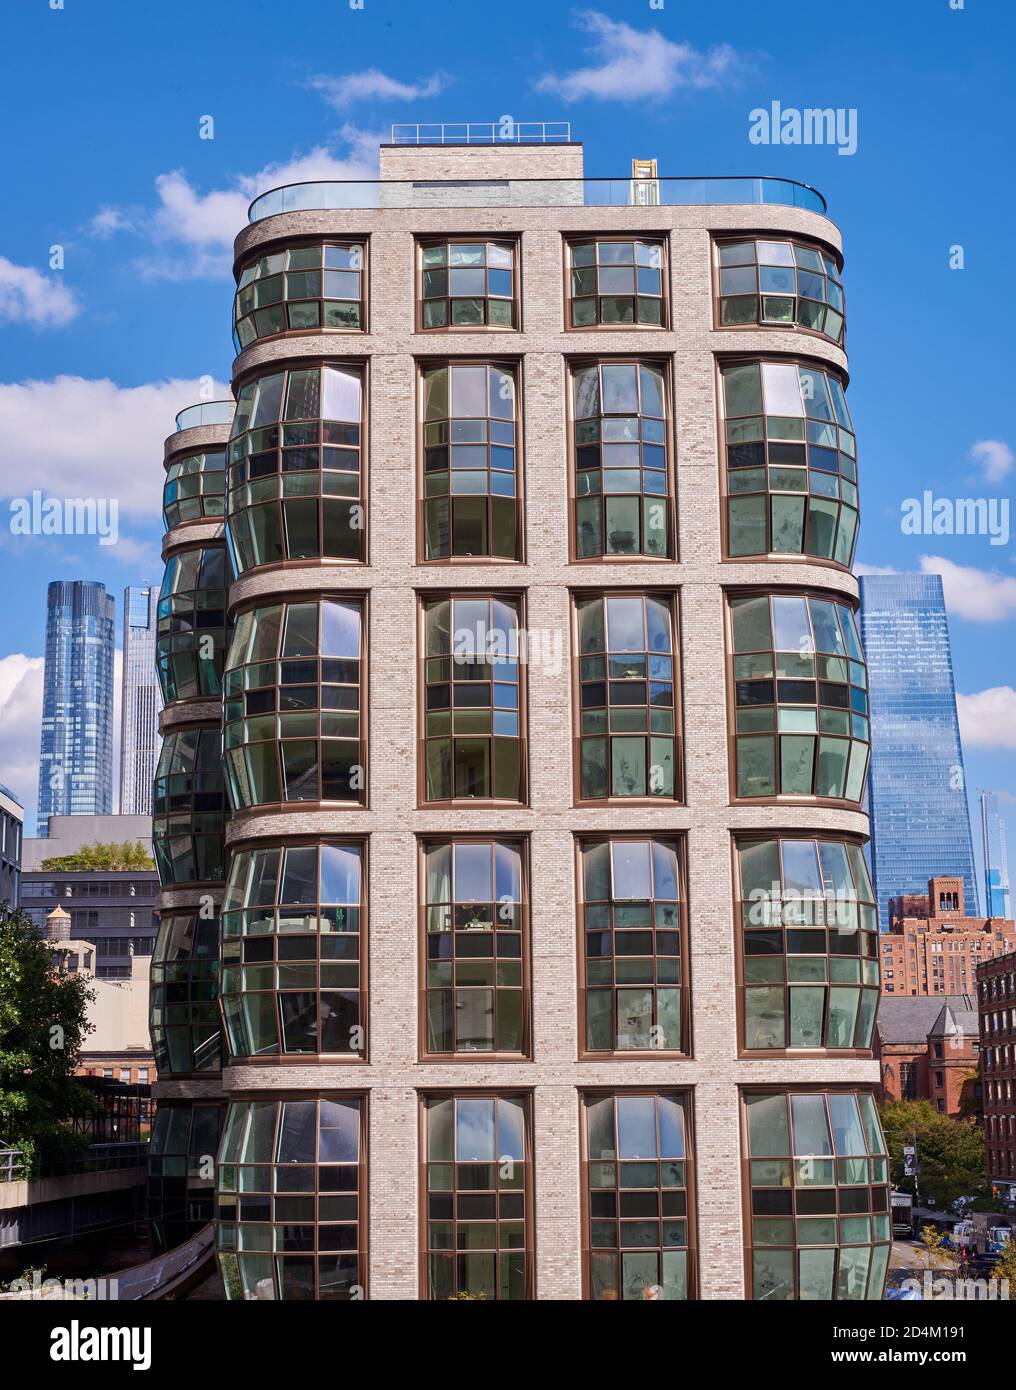 El edificio Lantern es un edificio residencial de gran altura en Chelsea, Nueva York, cuyas ventanas escultóricas burbujean y abultan Foto de stock